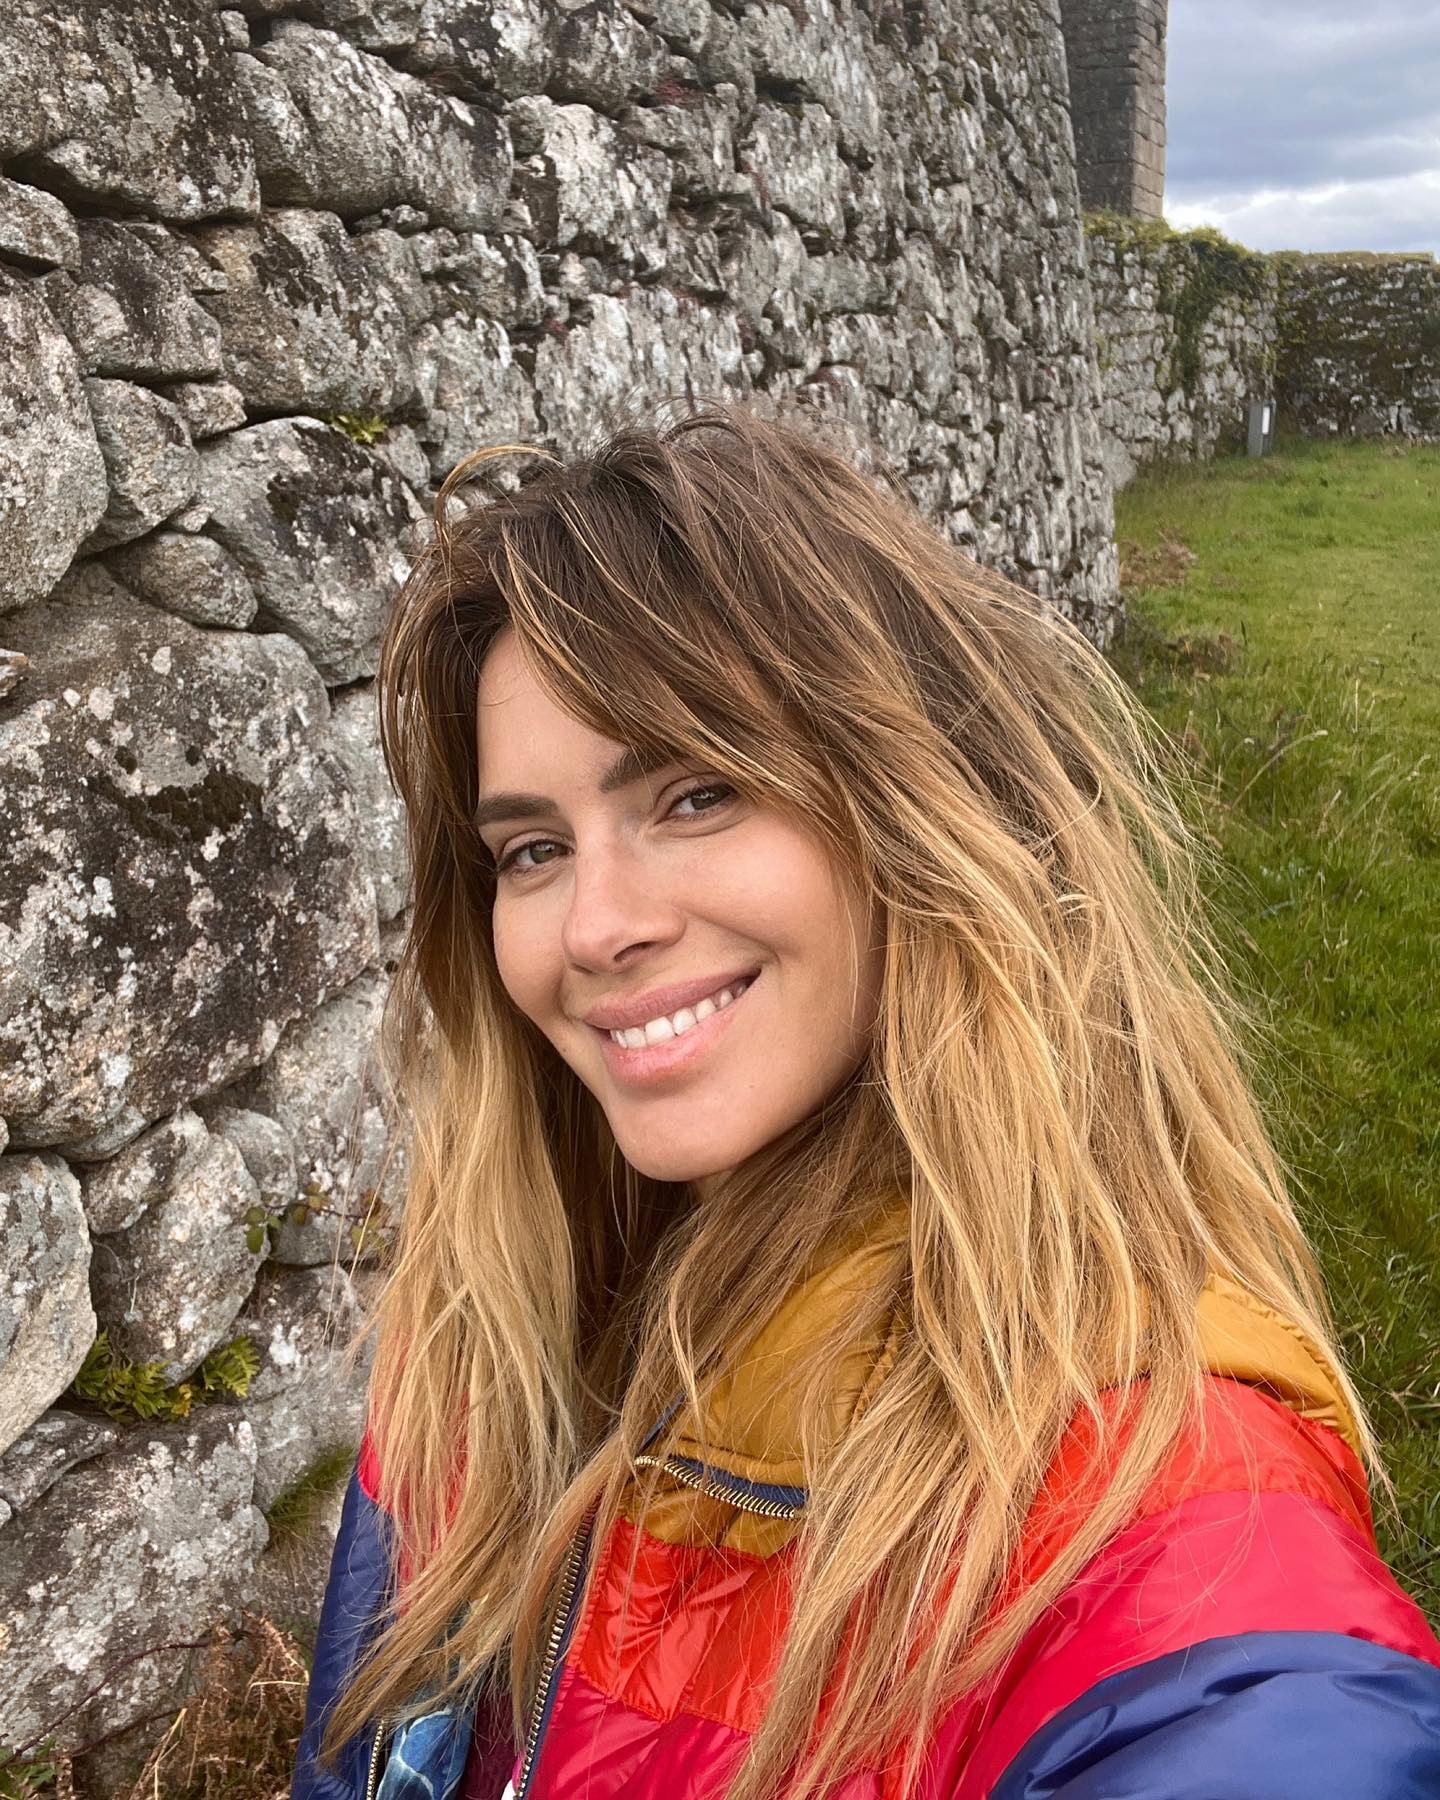 Carolina Dieckmann posa em ponto turístico de Portugal e encanta seguidores (Foto: Reprodução / Instagram)